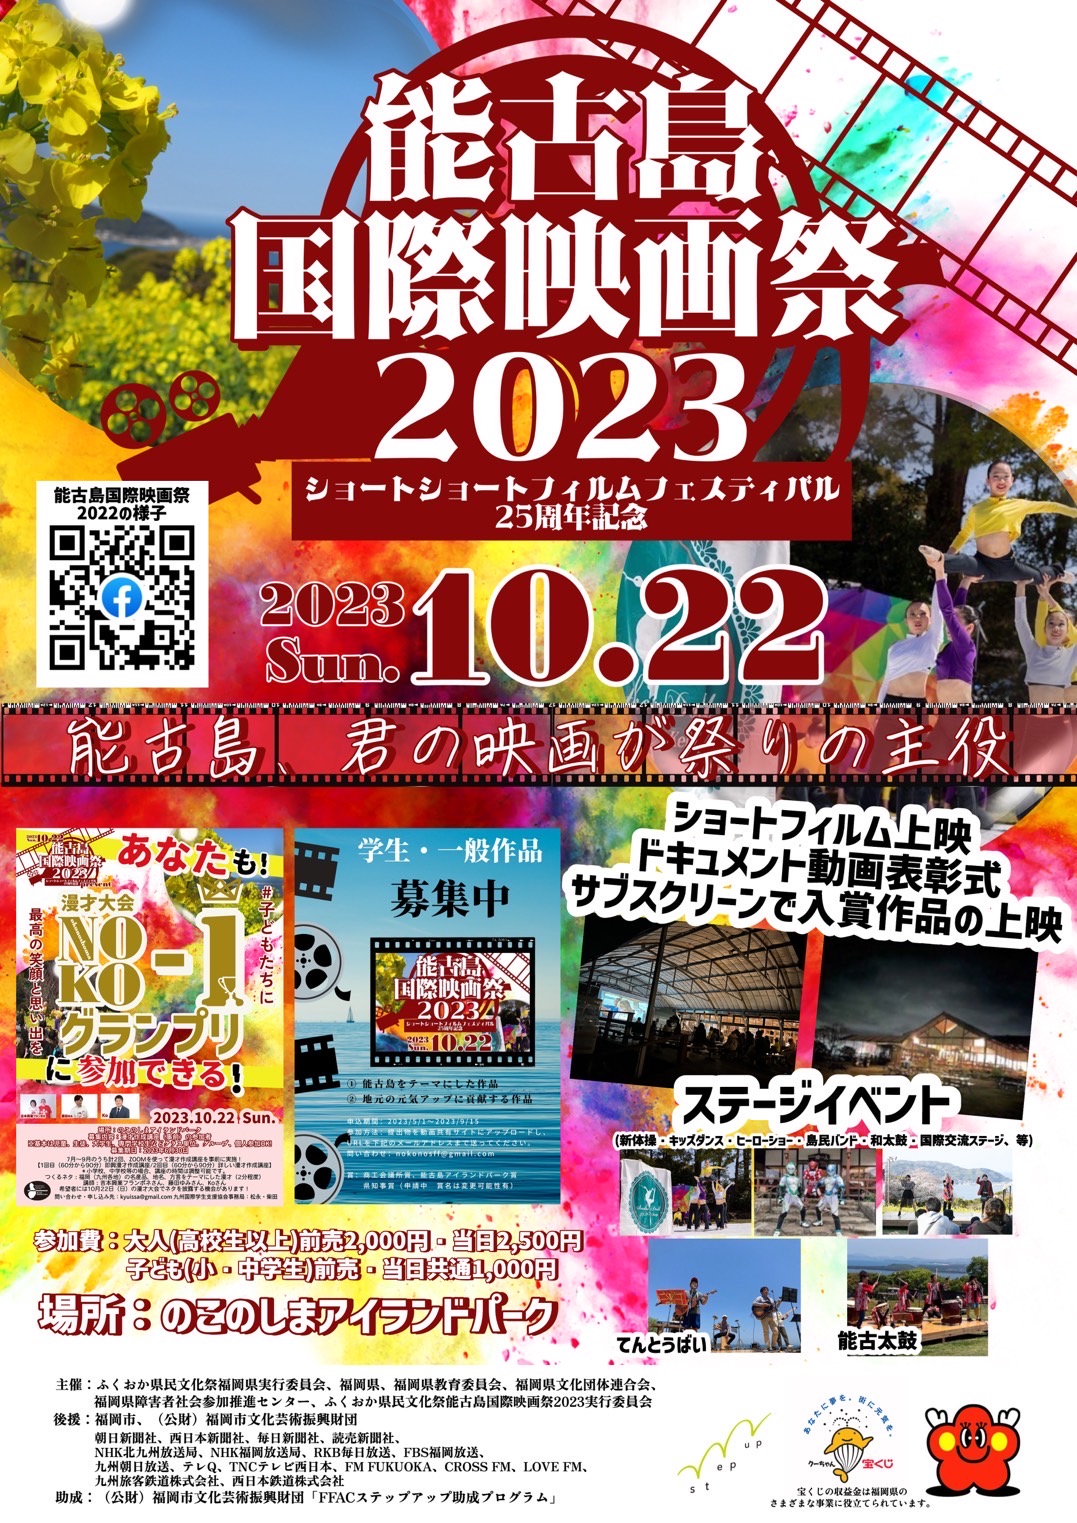 能古島国際映画祭2023